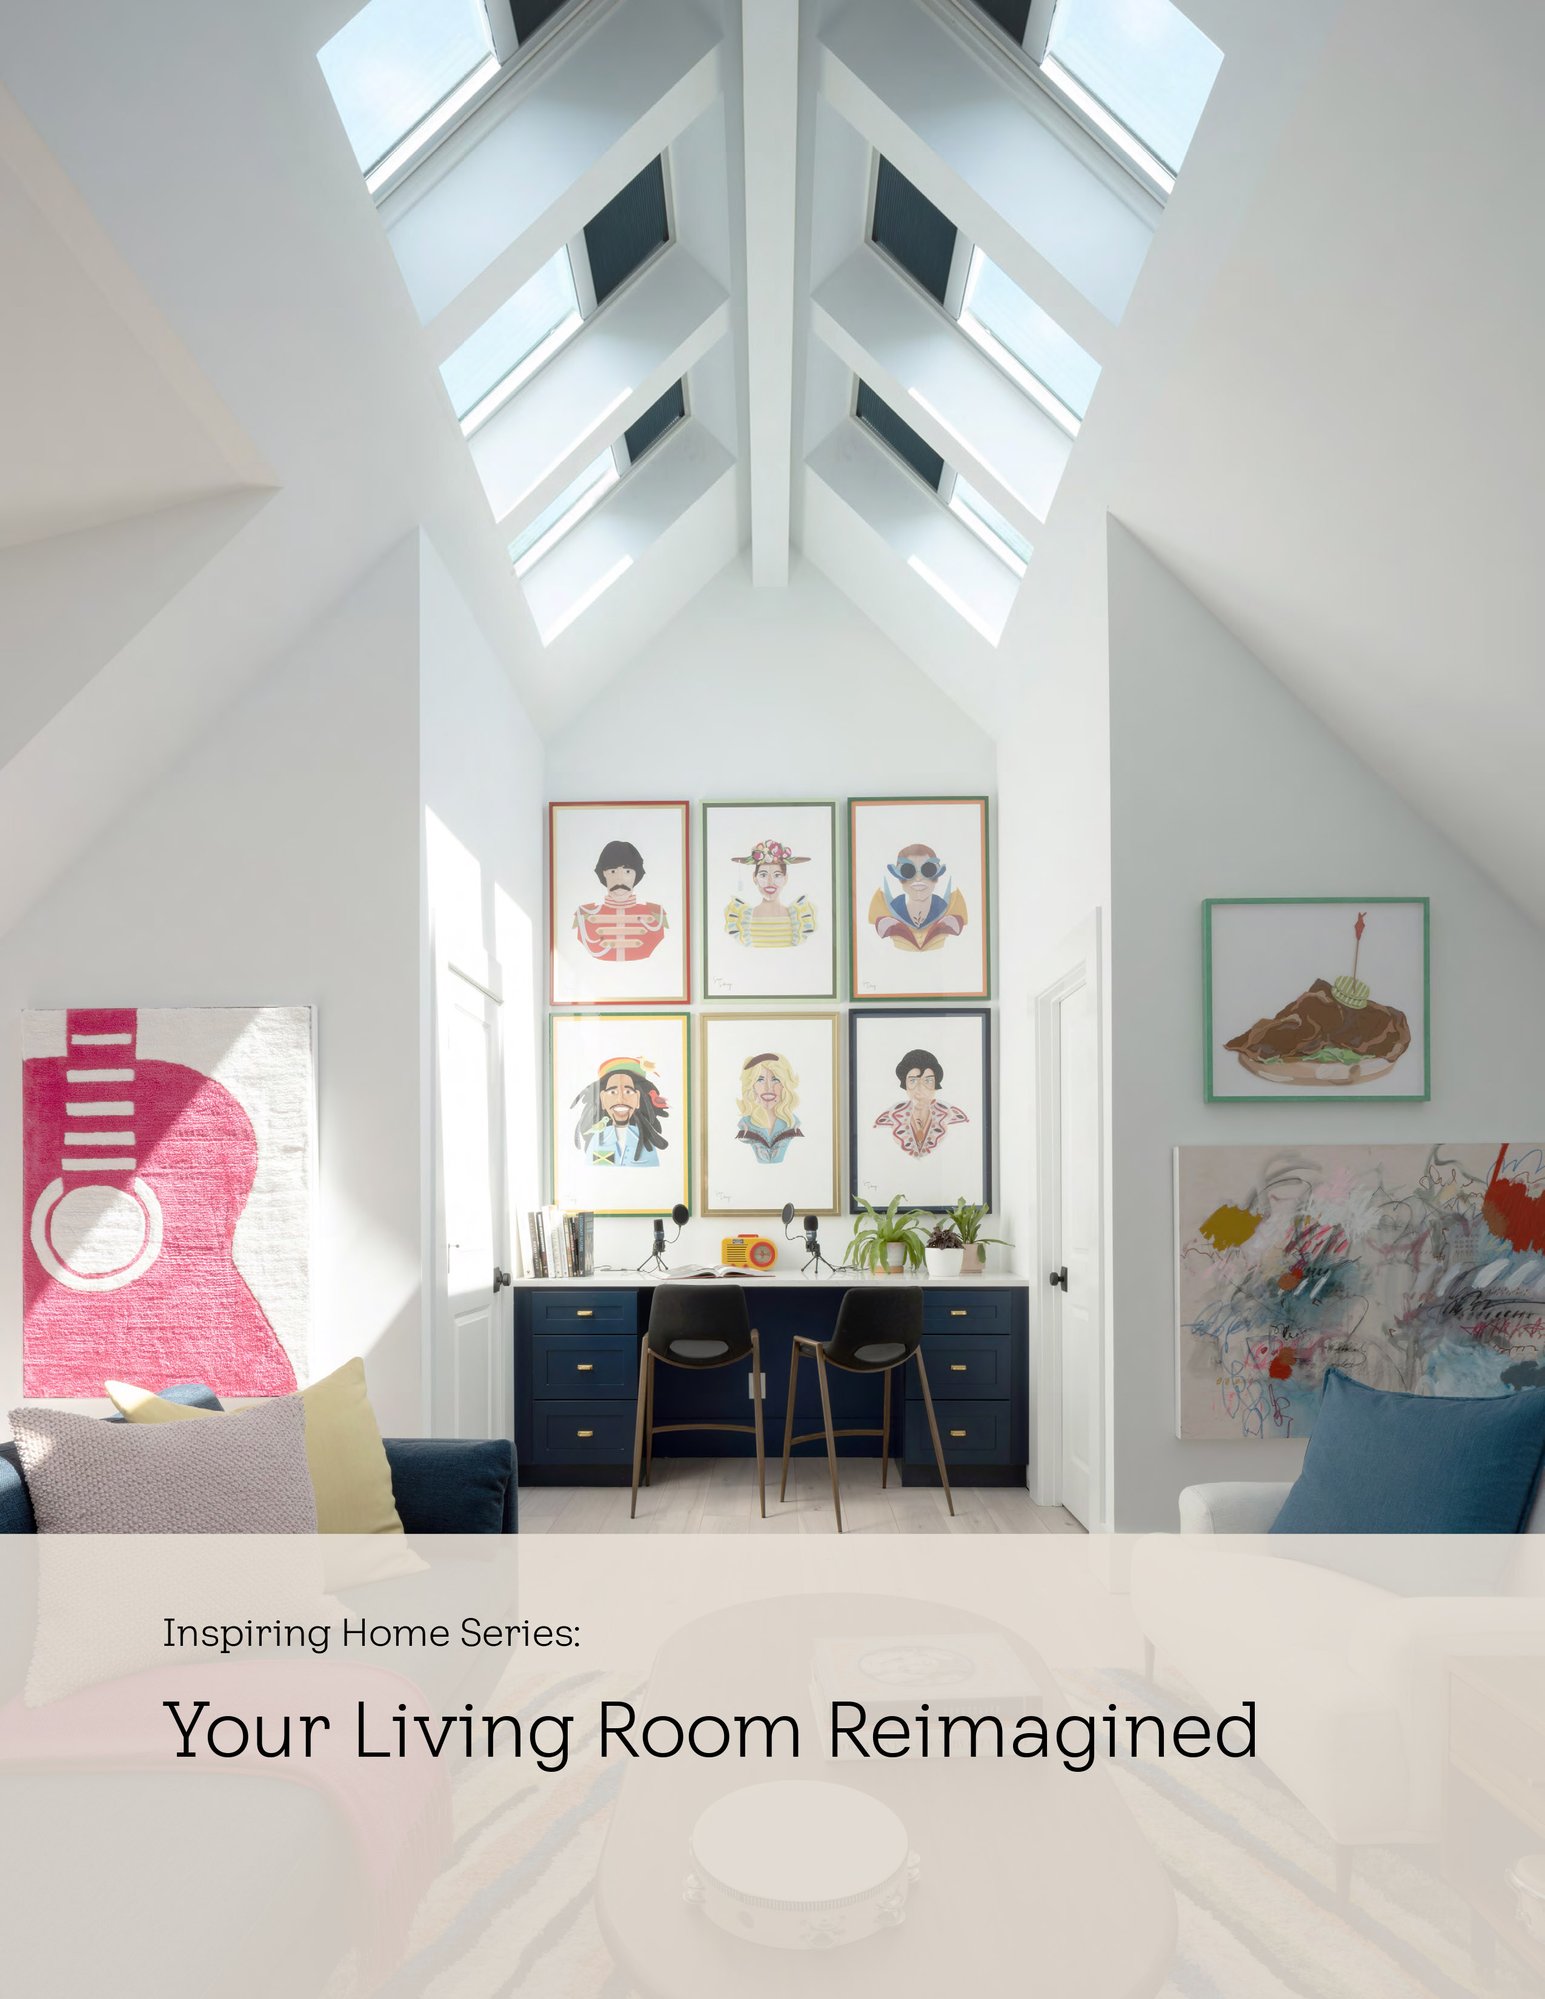 Living-Room-Inspiration-Home-Guide-v-4501-ebook-0424